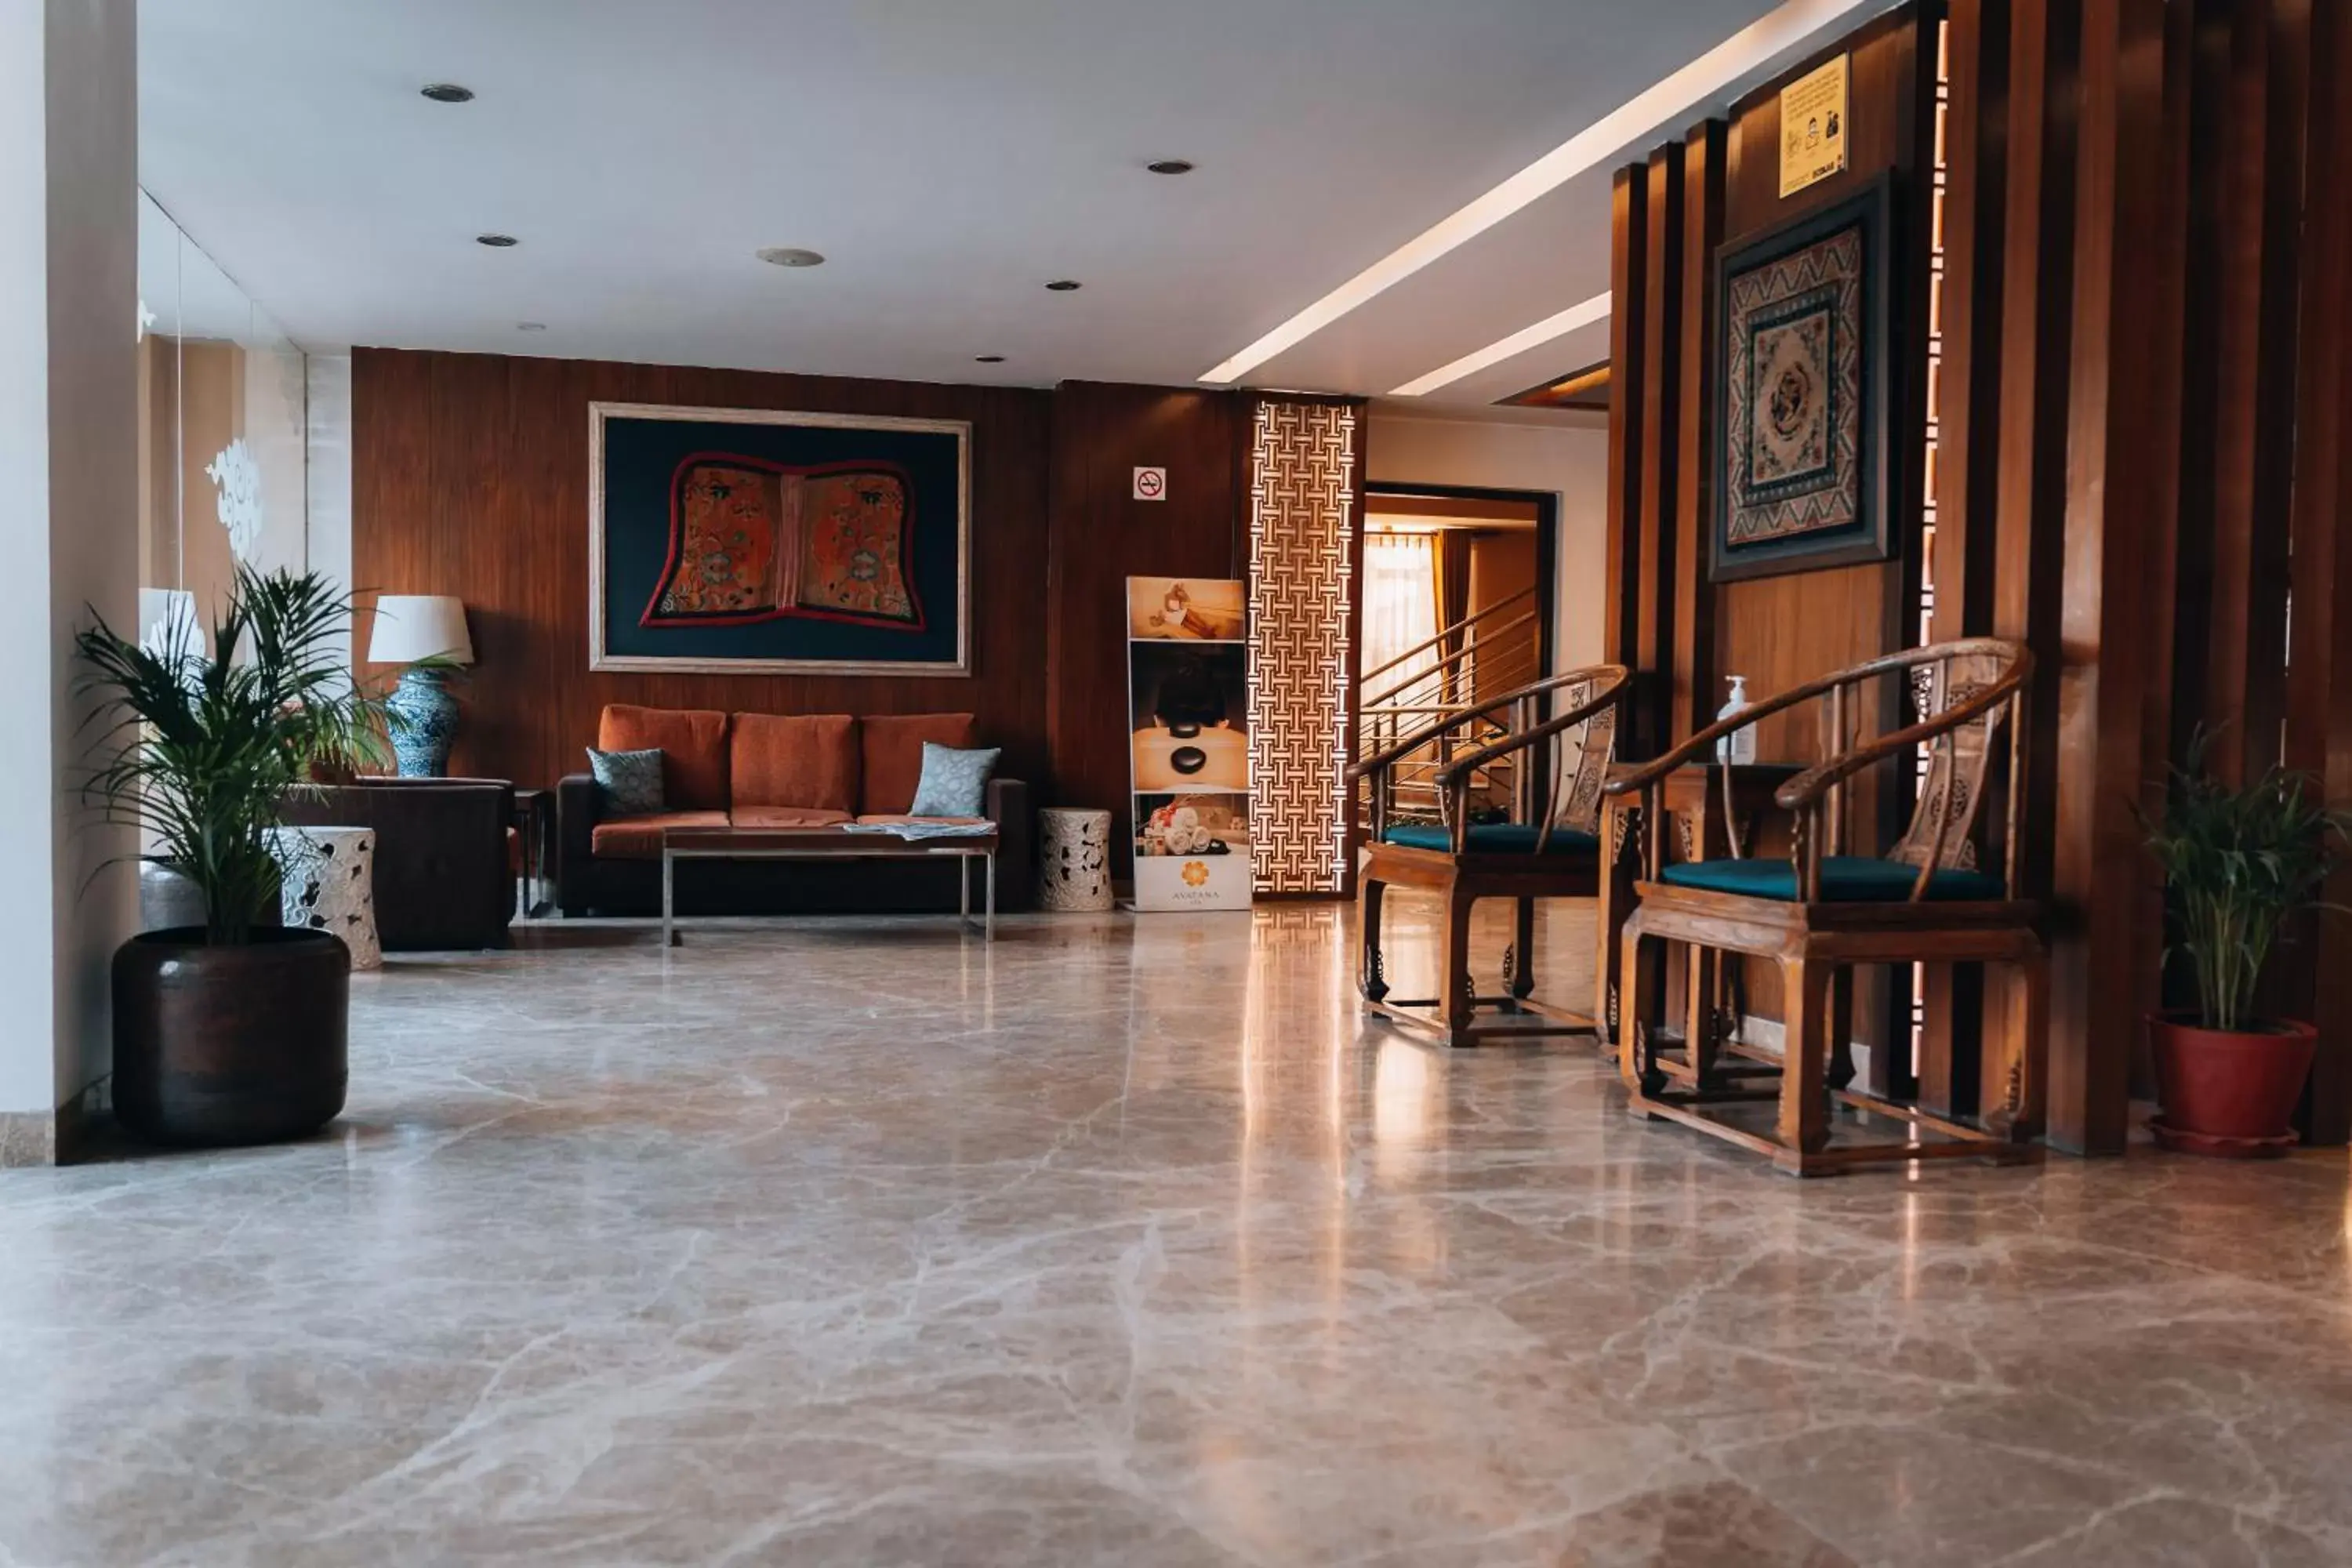 Lobby or reception, Lobby/Reception in Hotel Shambala